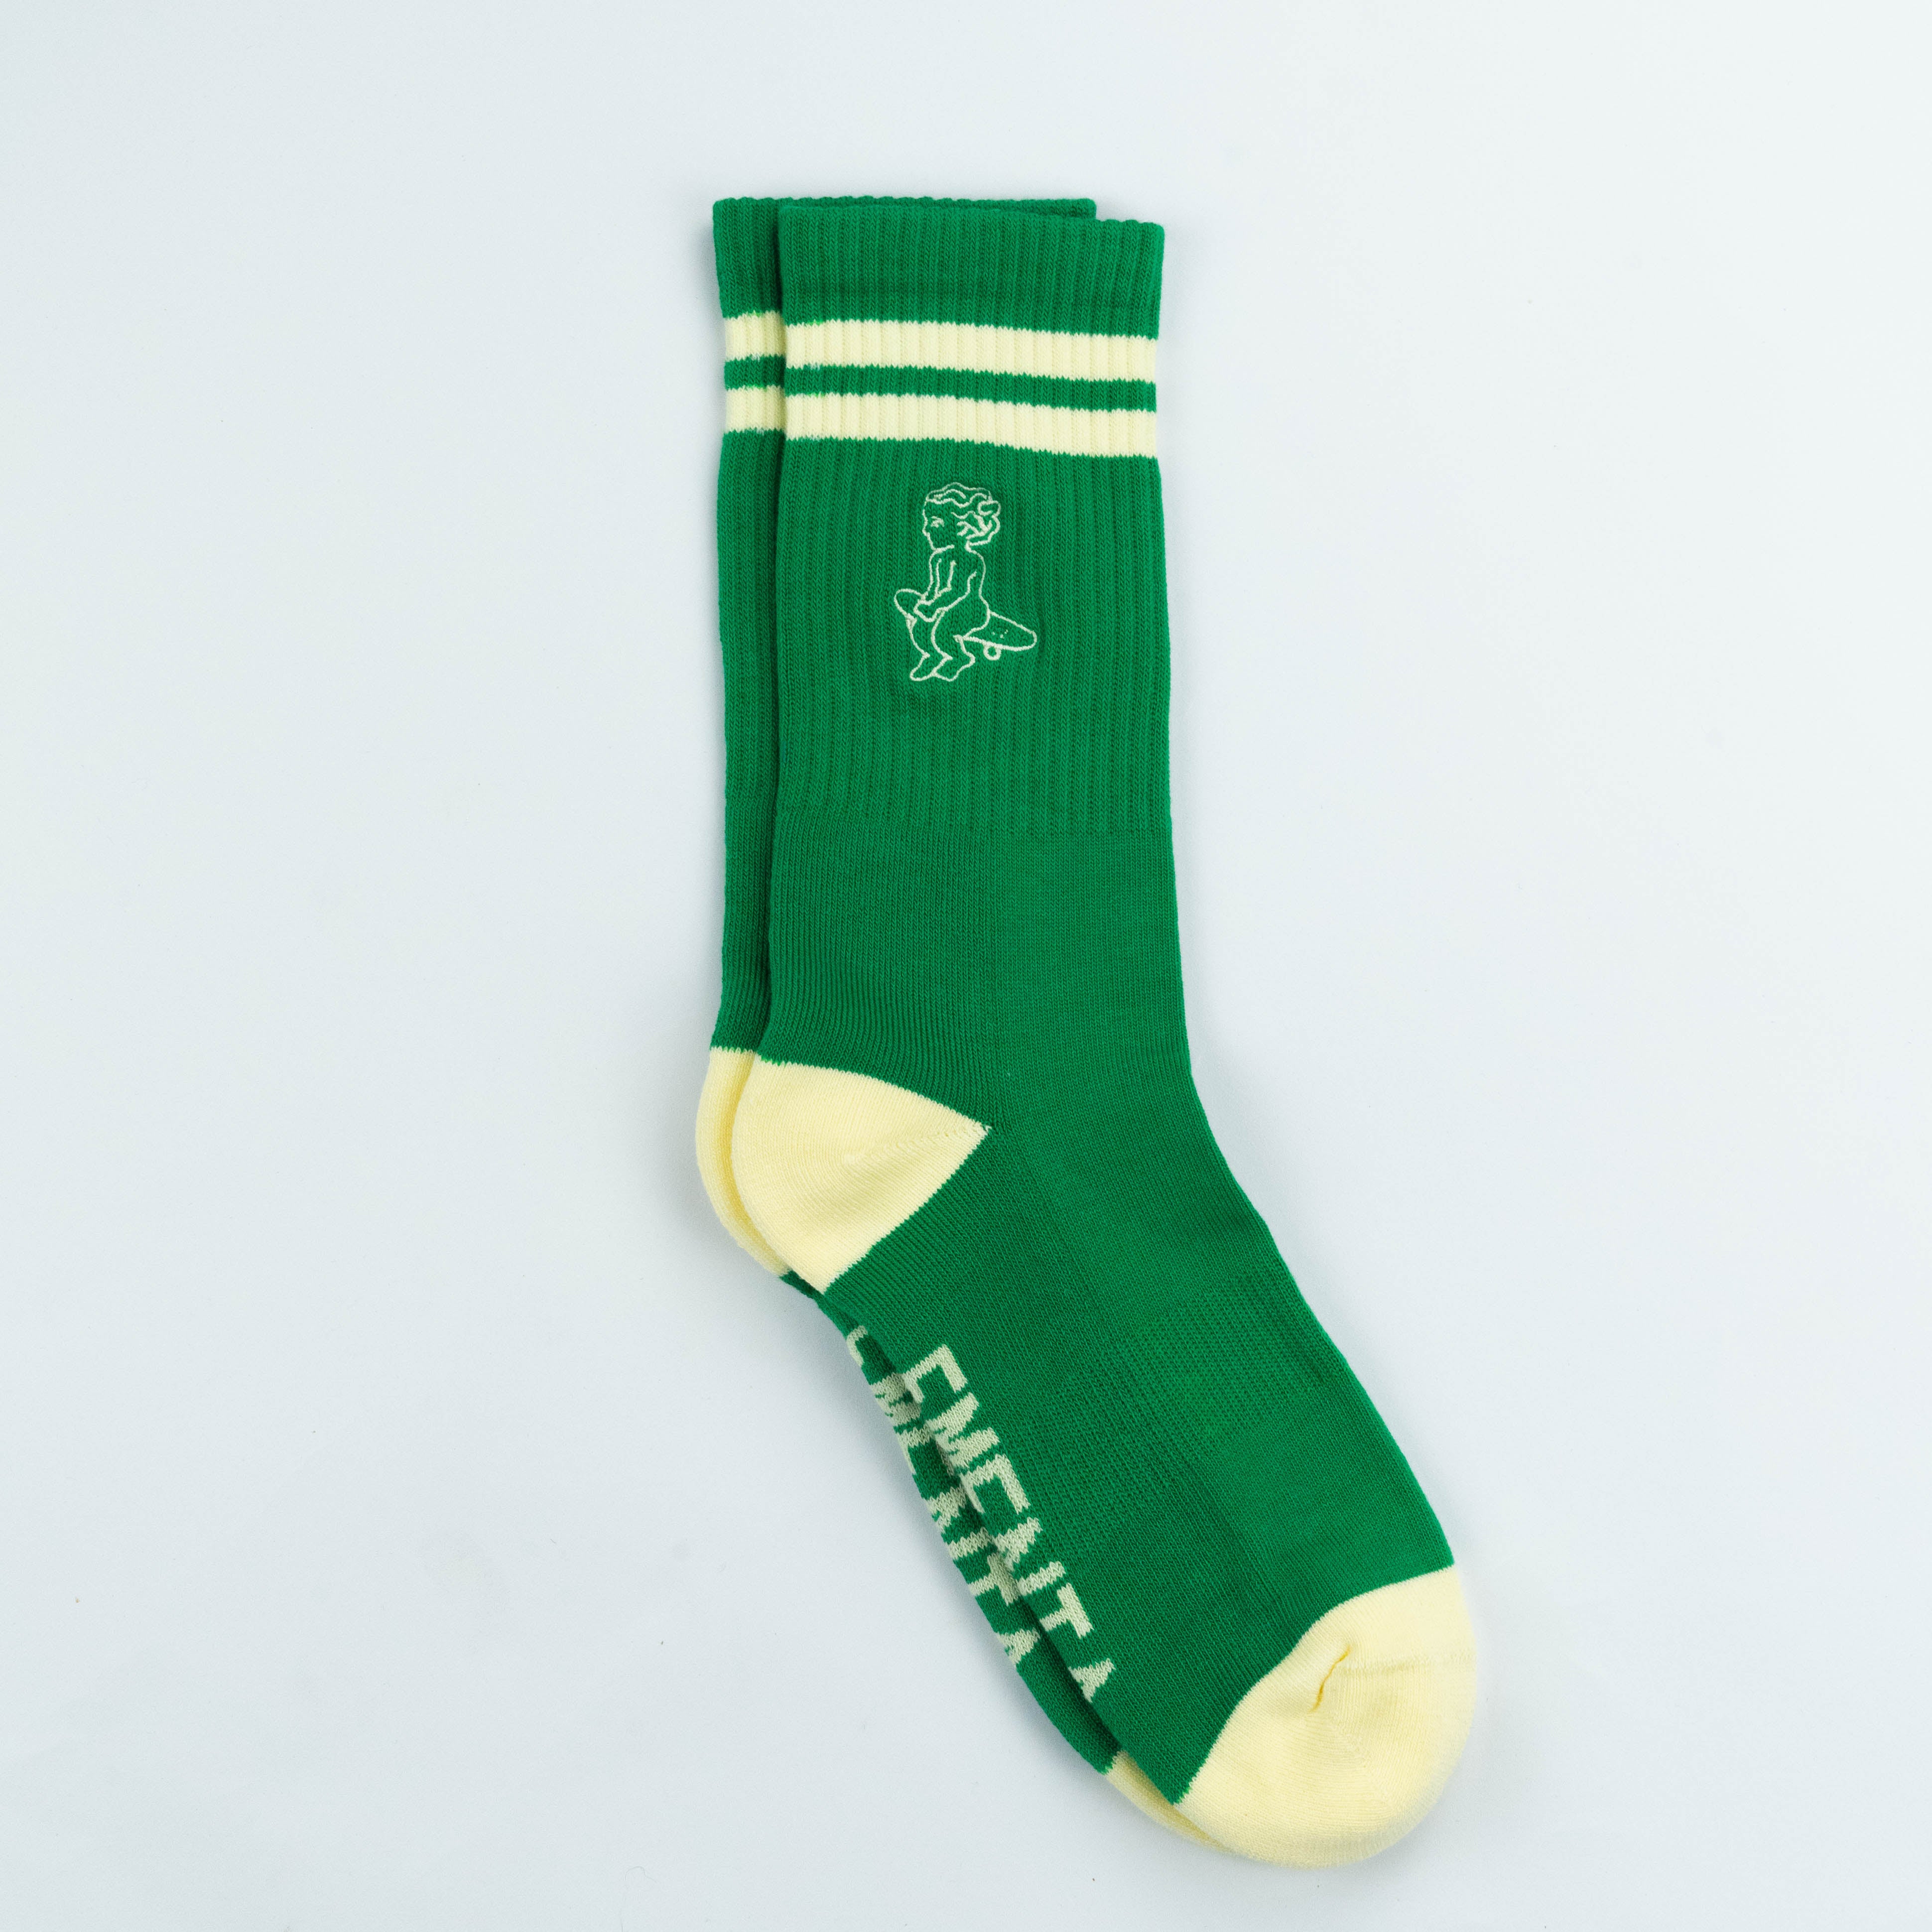 Baby Socks Green/Off White